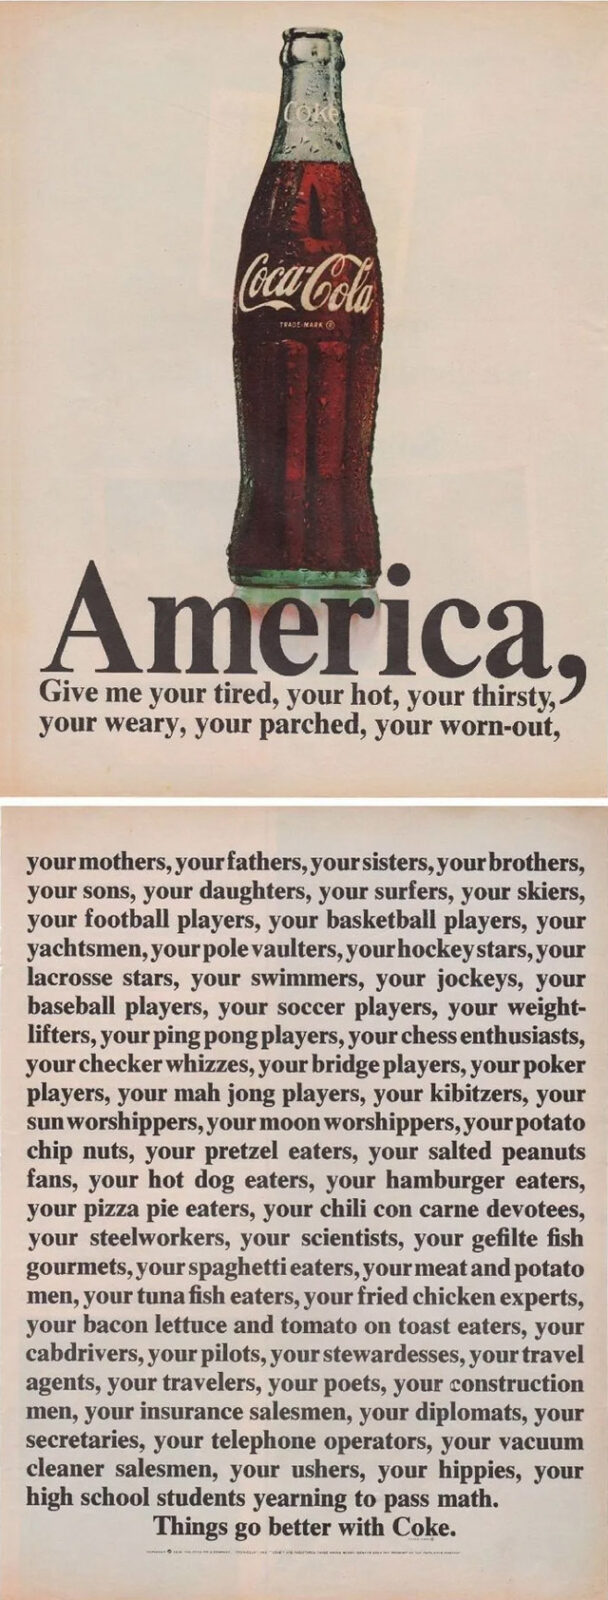 Coke ad - pro america - patriotic